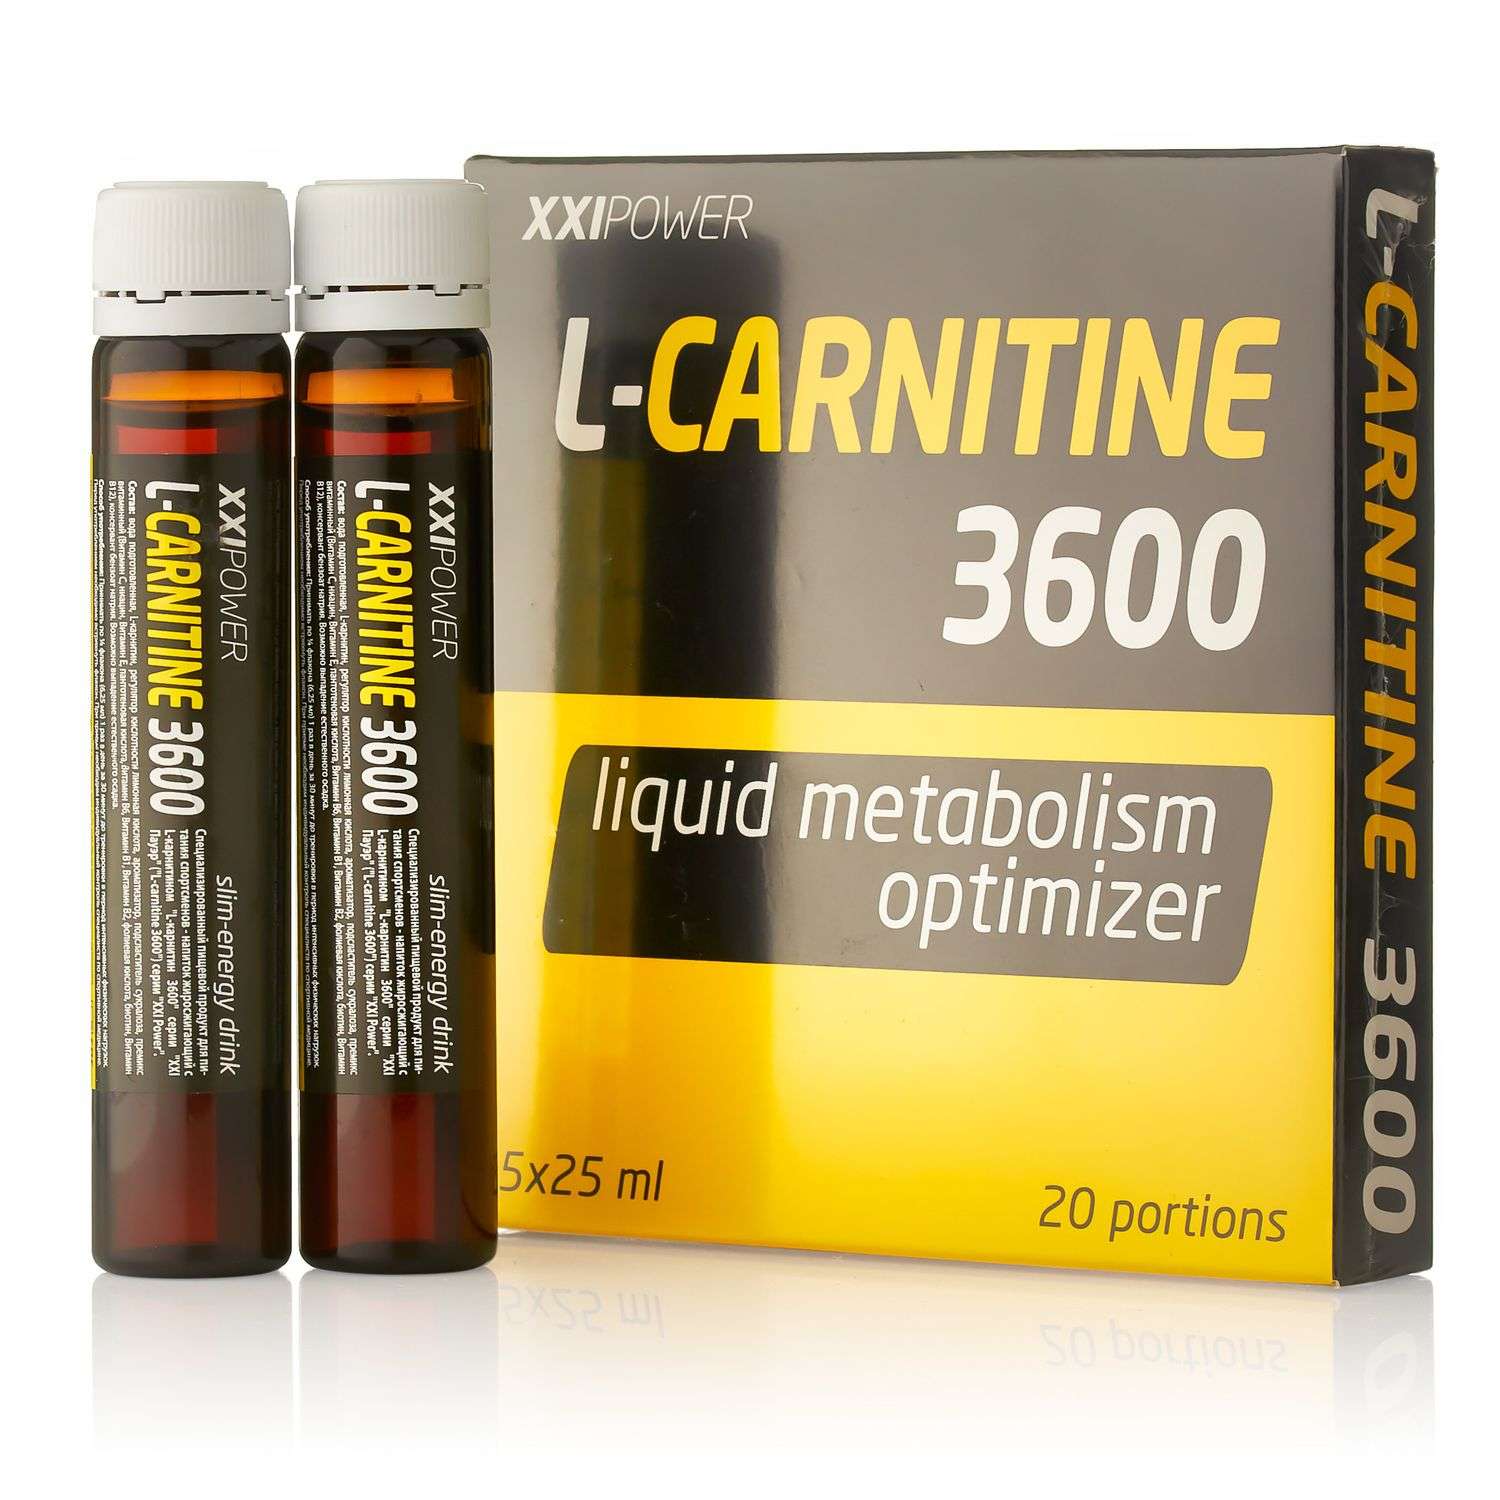 Продукт пищевой XXI Power L-Carnitine 3600 5*25мл - фото 1